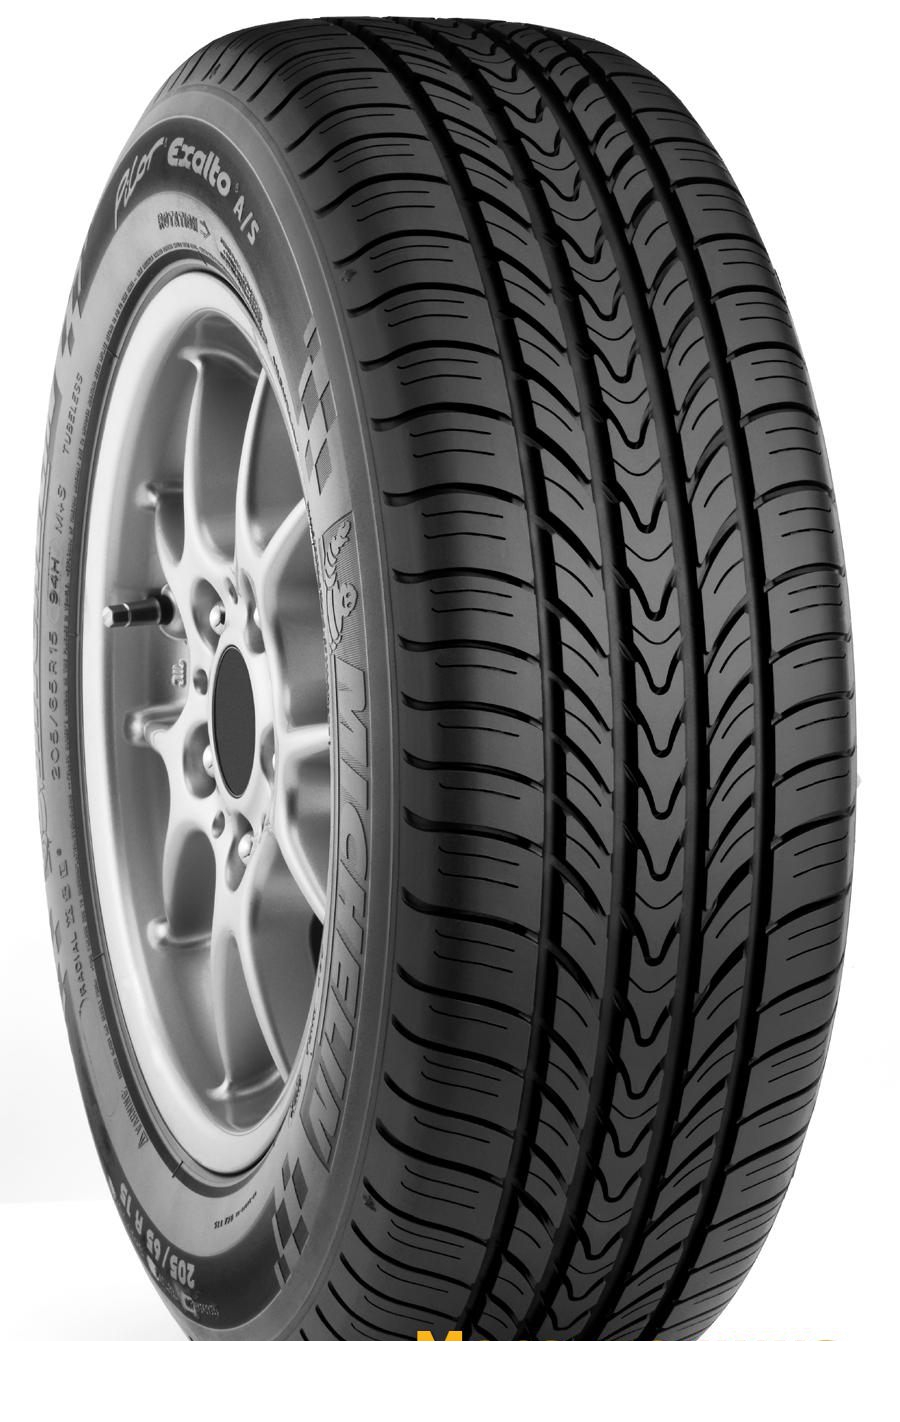 Tire Michelin Pilot Exalto A/S 215/55R16 93V - picture, photo, image